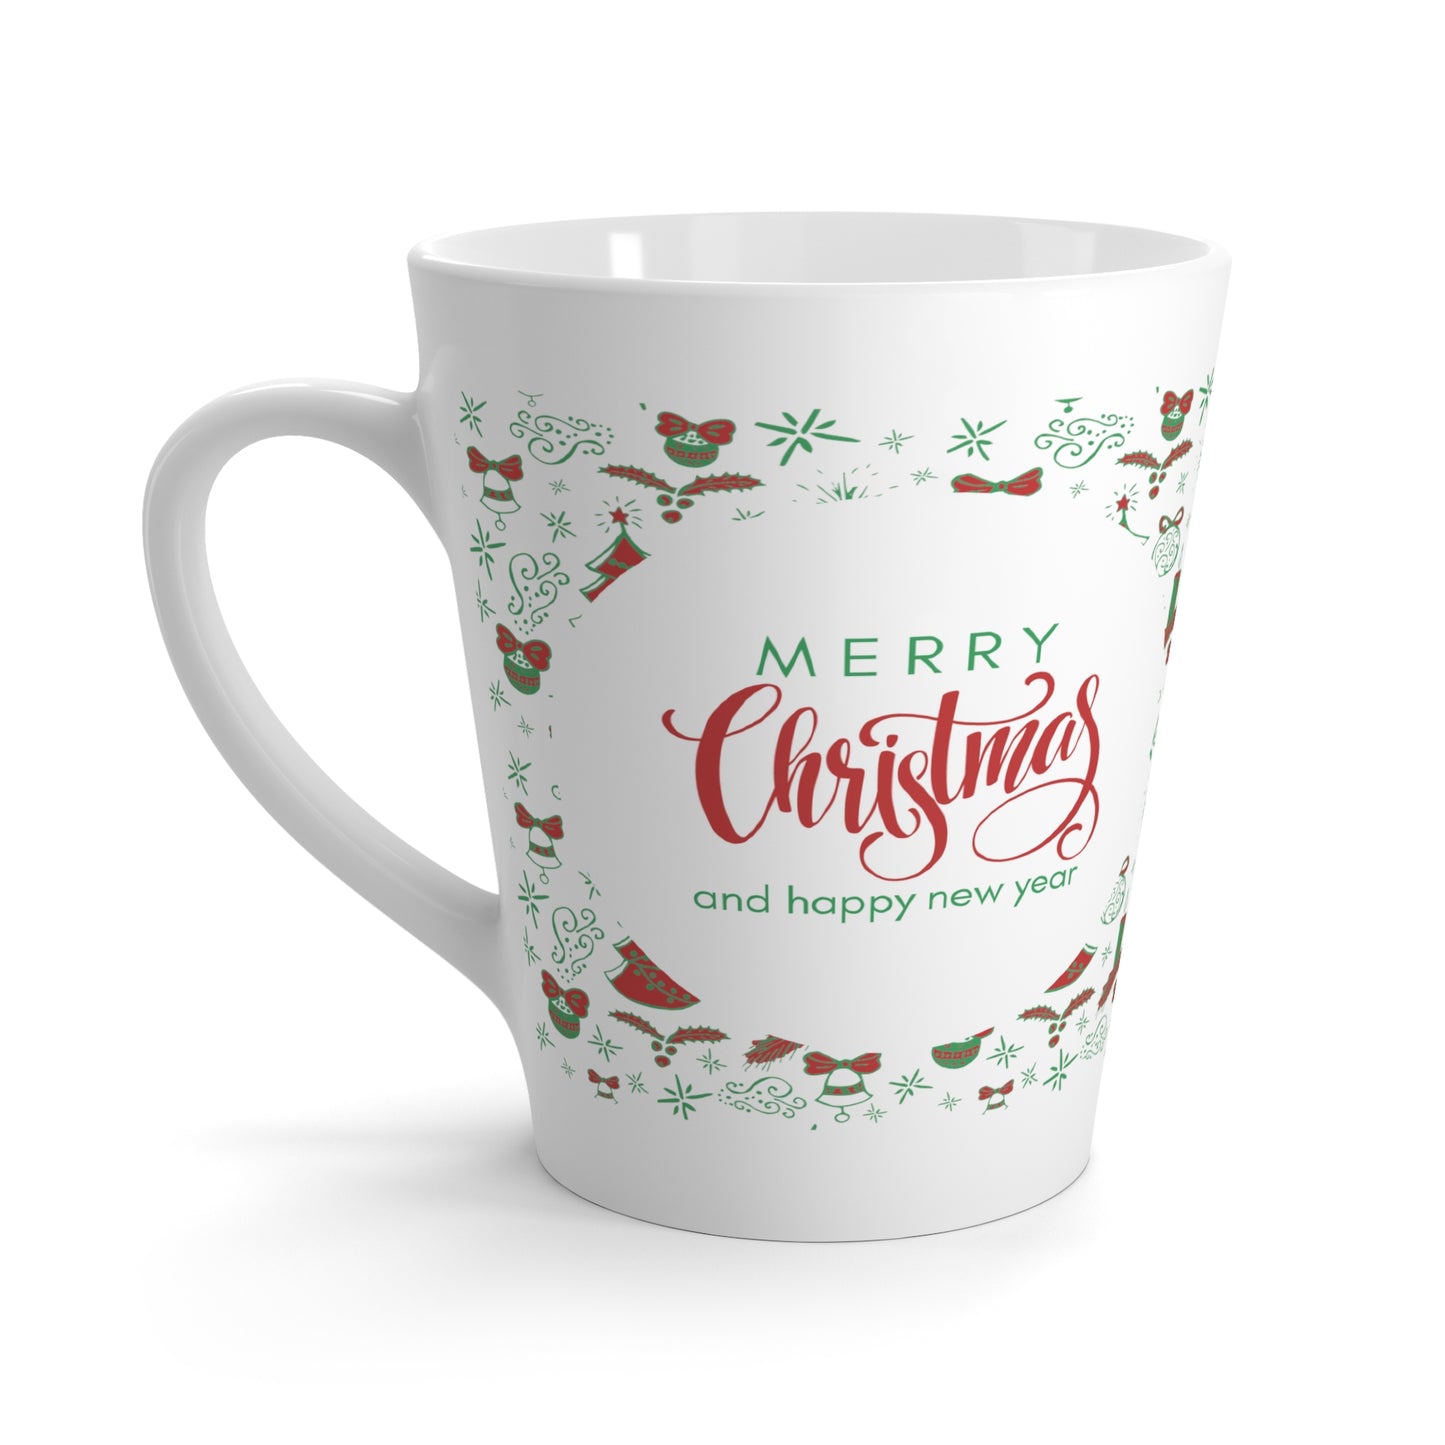 Merry Christmas & Happy New Year Printed Latte Mug, 12oz